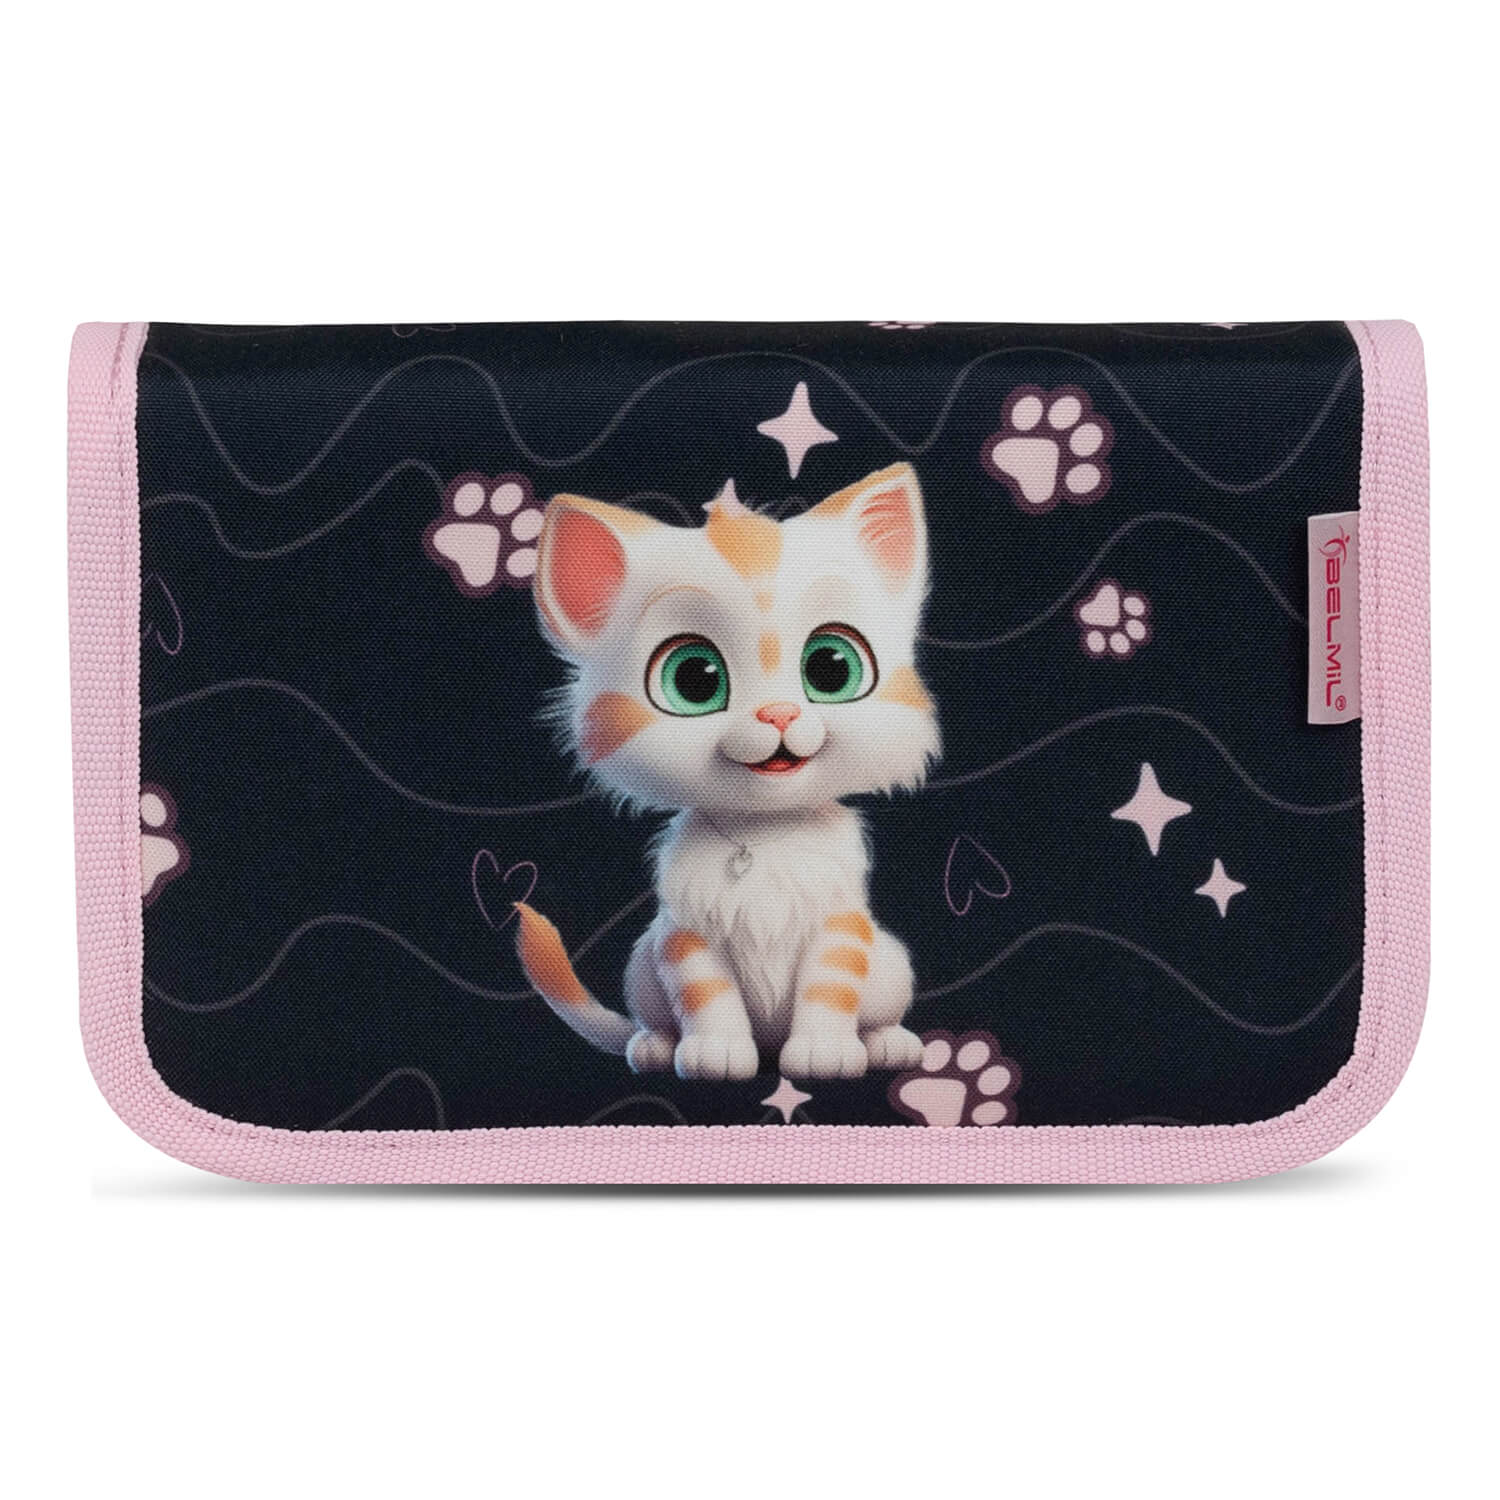 Classy Cute Kitten schoolbag set 4 pcs